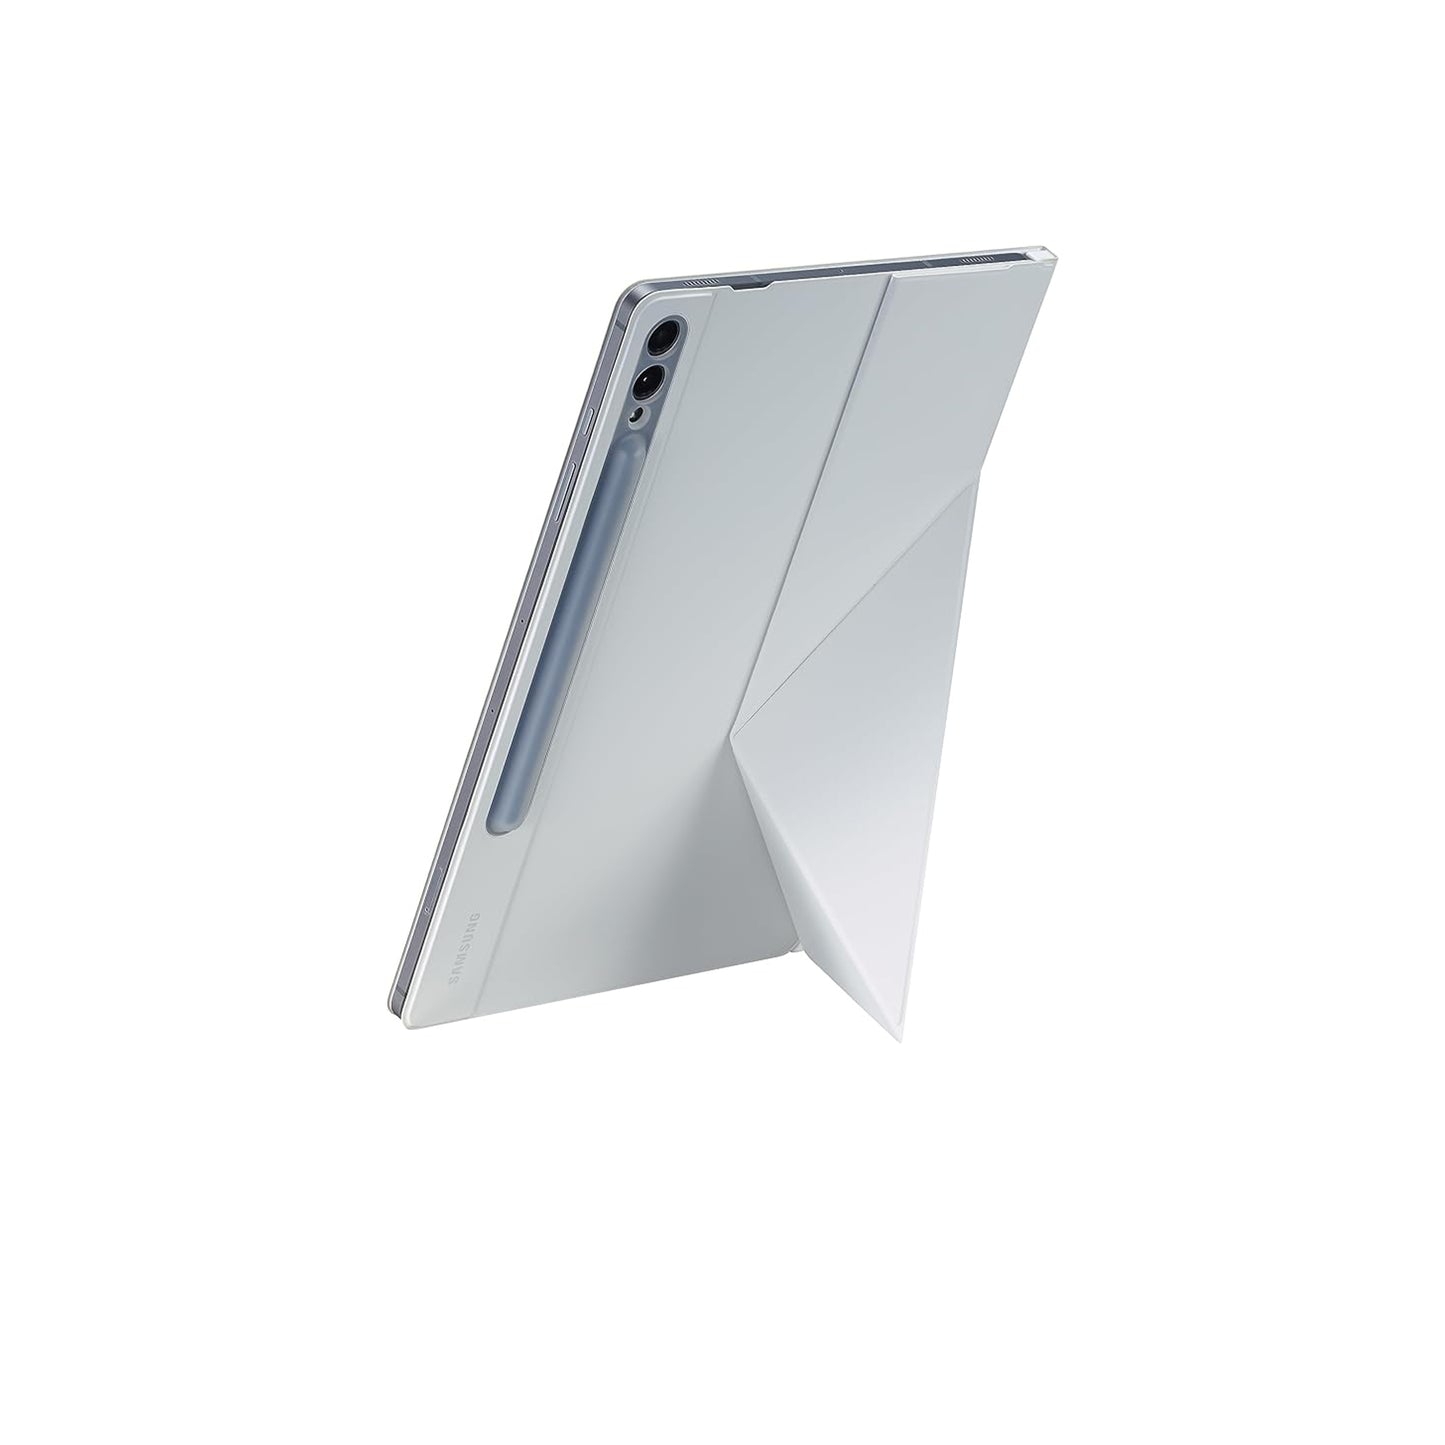 غطاء الكتاب الذكي Samsung Galaxy Tab S9 FE+، حافظة حماية للكمبيوتر اللوحي، خيارات حامل أفقي وعمودي، ظهر مغناطيسي قابل للفصل، تشغيل/إيقاف الشاشة تلقائيًا، إصدار الولايات المتحدة، أبيض 